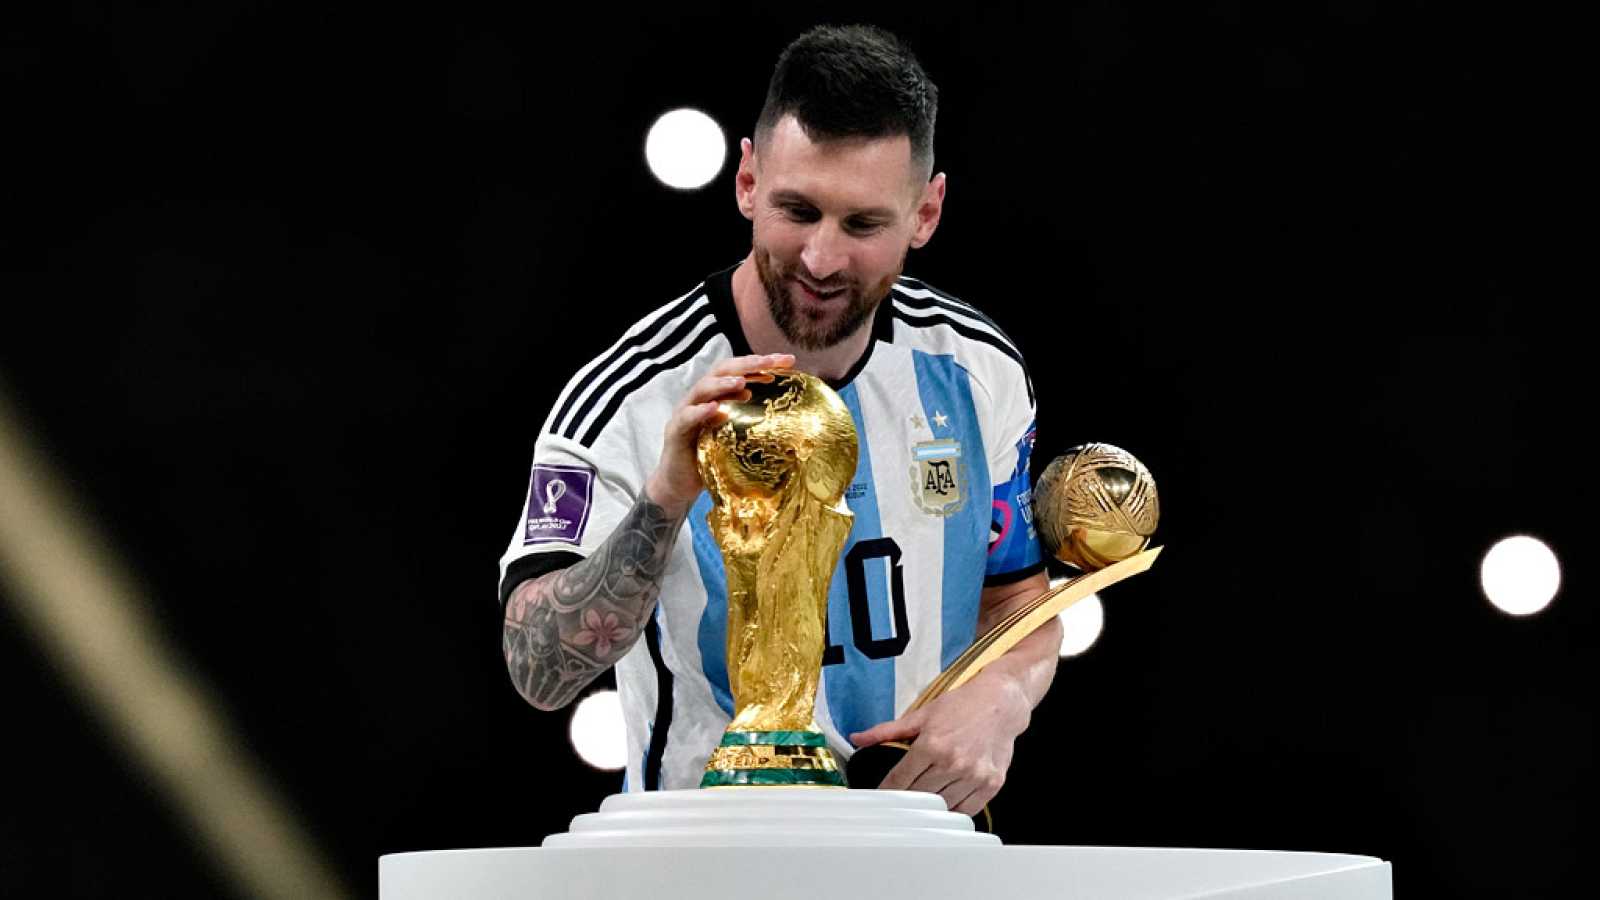 El mundo del deporte se rinde a Argentina y Messi